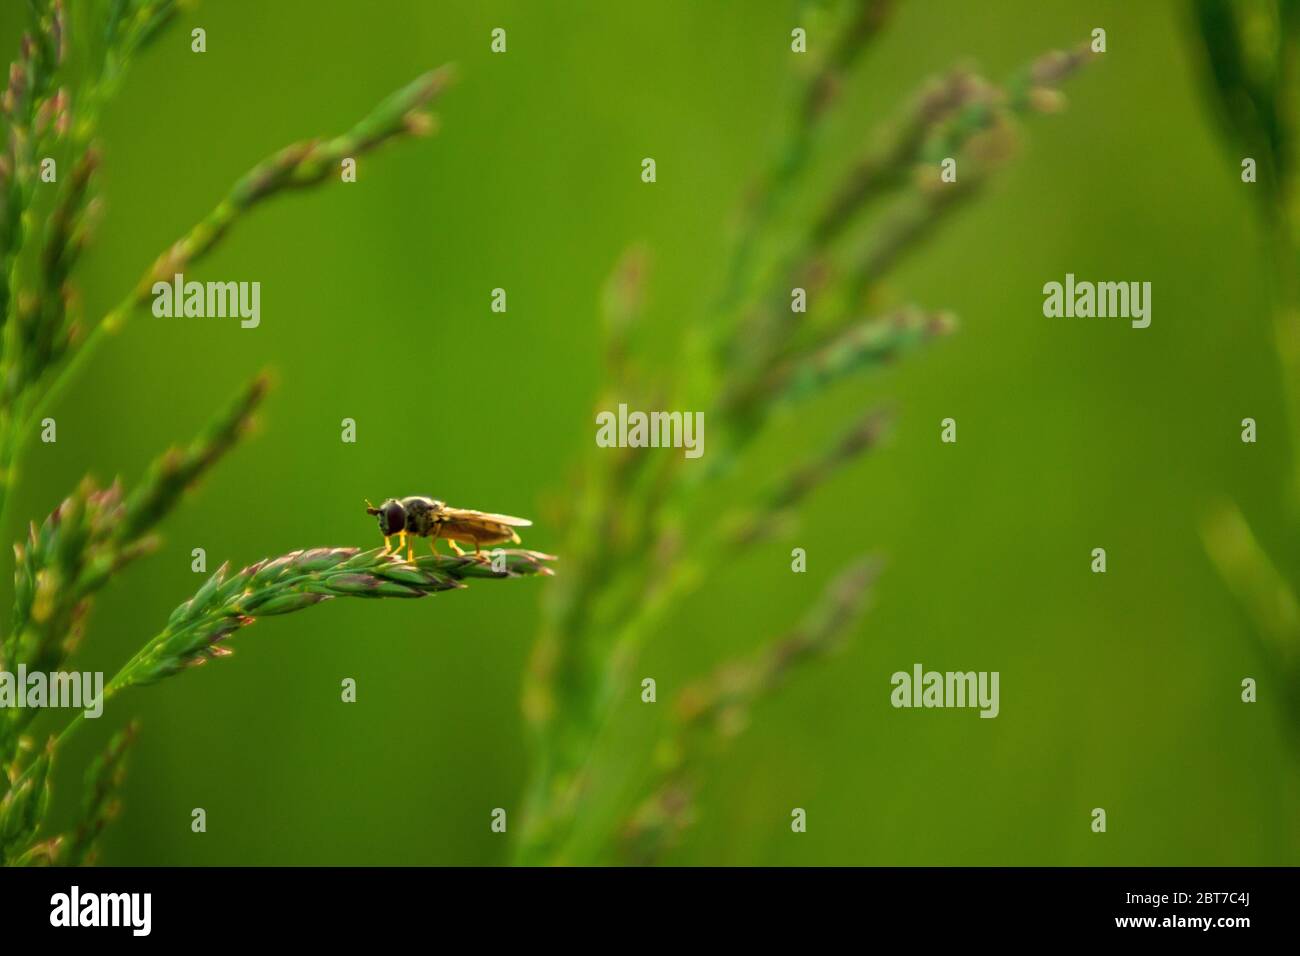 Un piccolo insetto su una lama d'erba su uno sfondo verde di un bel prato. Foto Stock